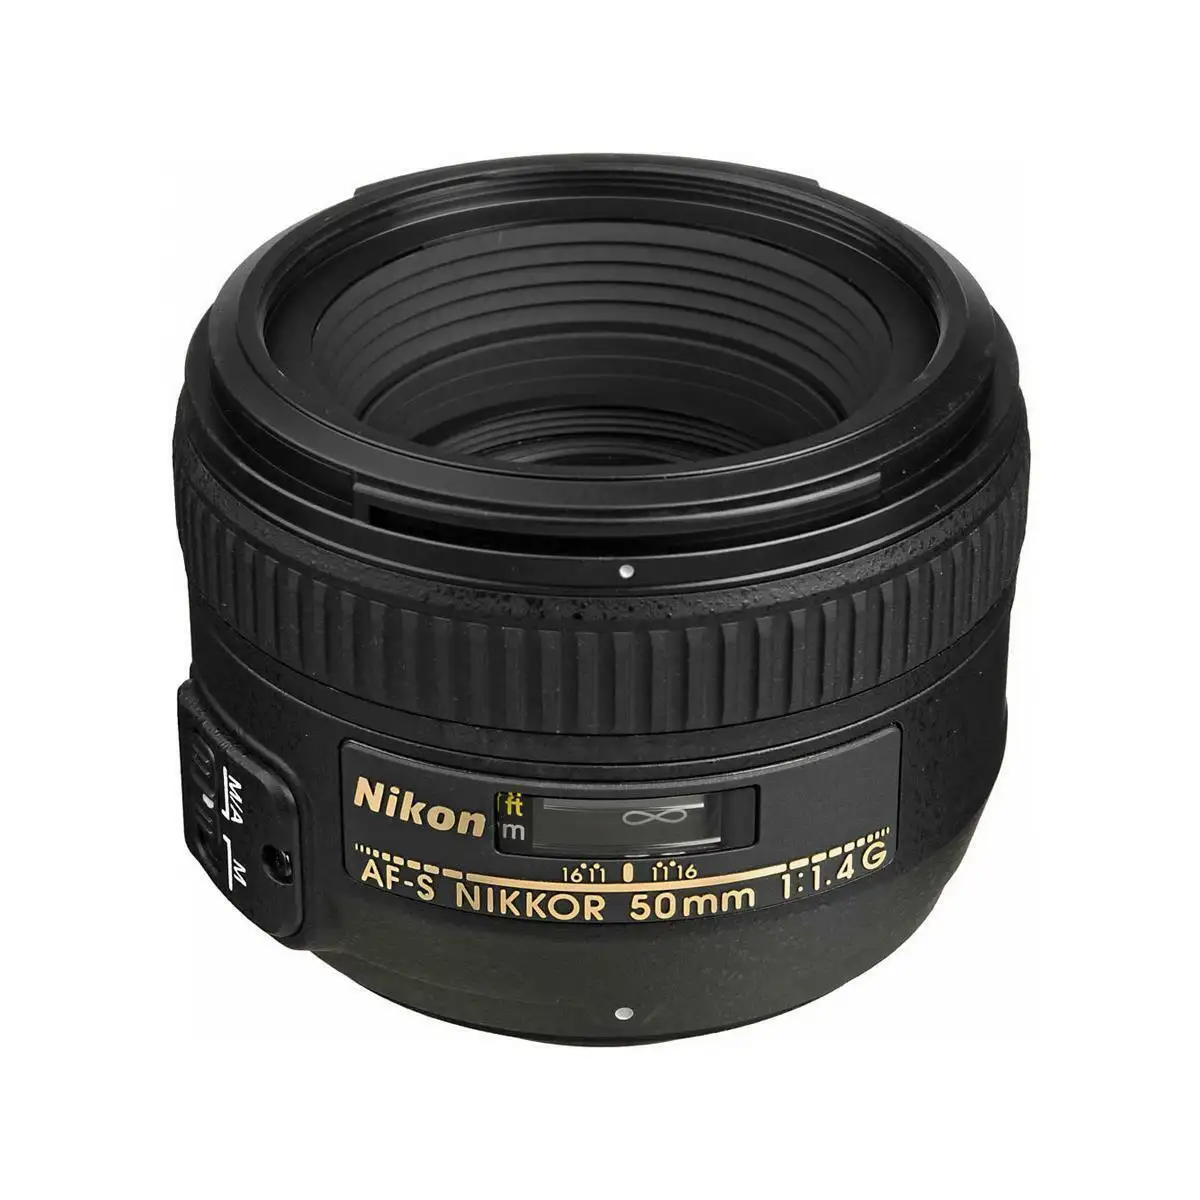 N.ikon AF-S 50mm f/1.4G Lens Black